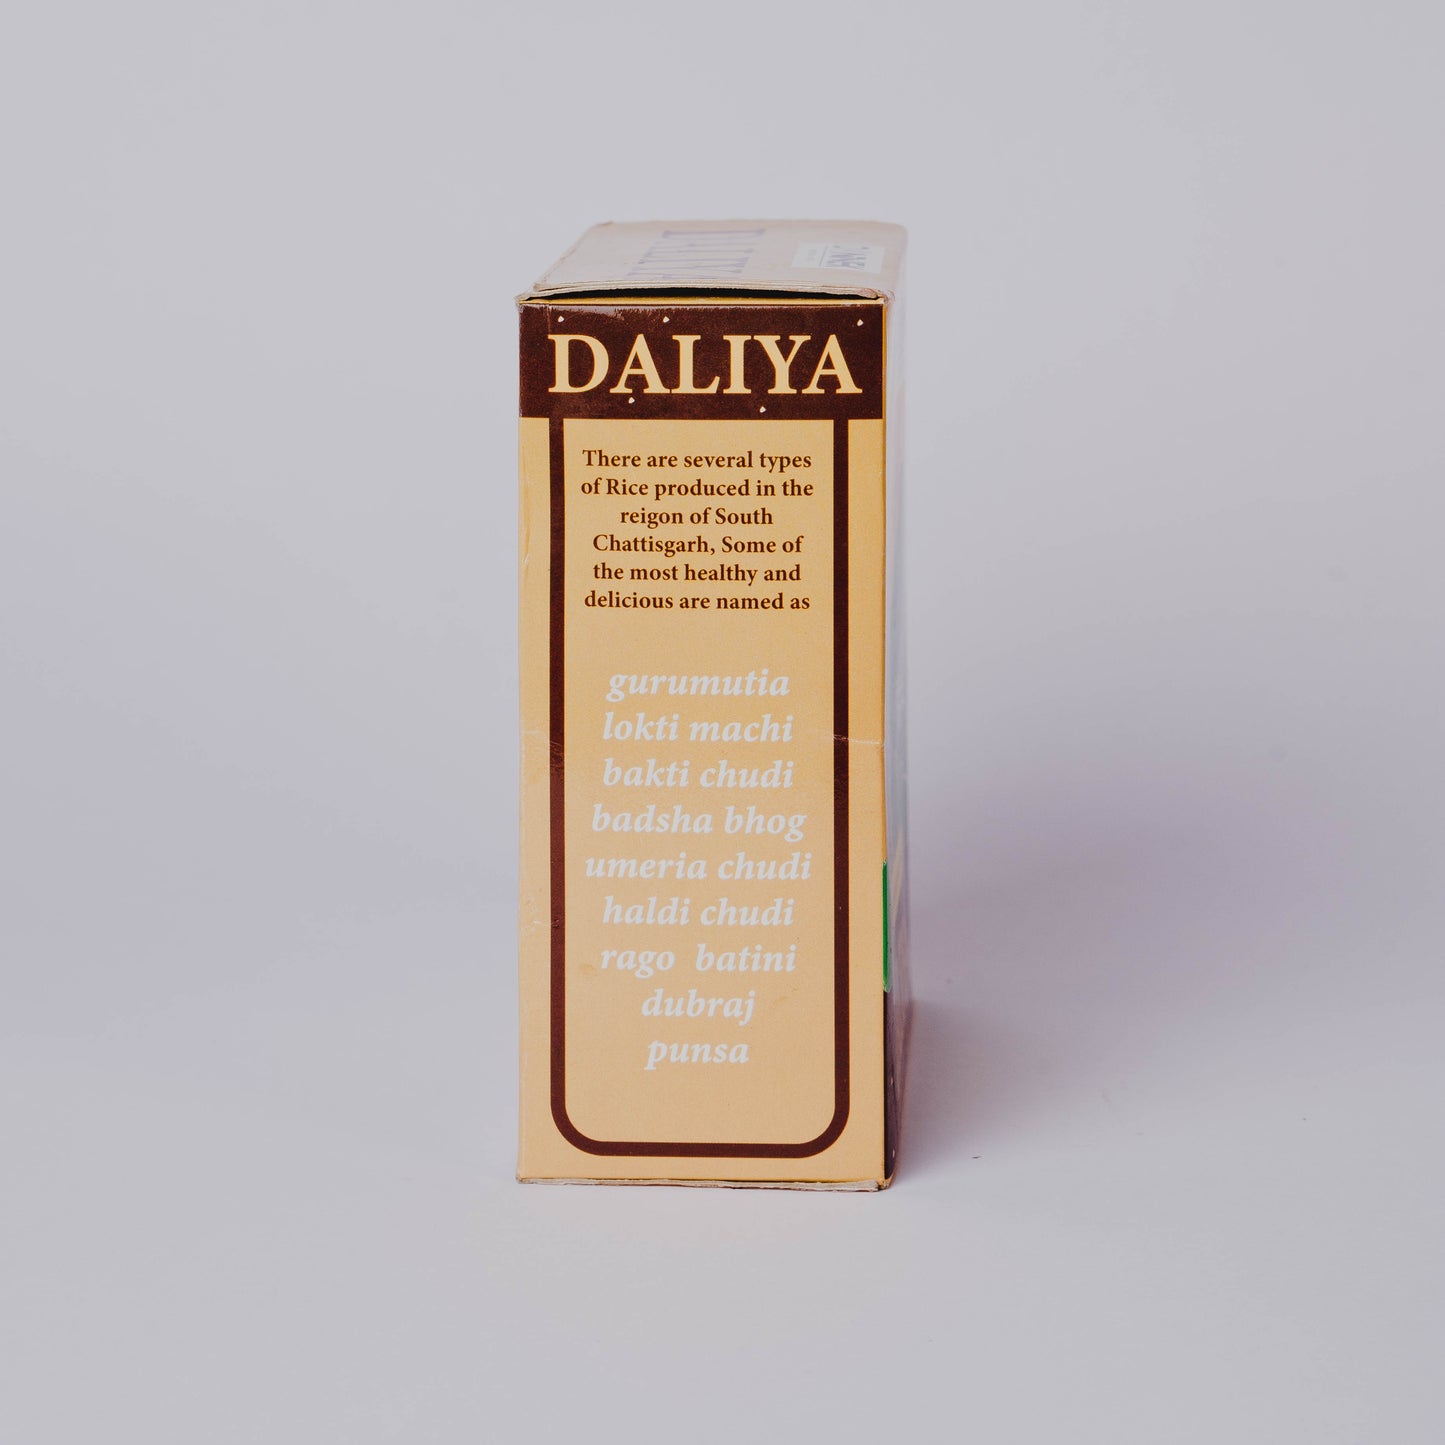 Bastar Foods Dannex Daliya | 500 G